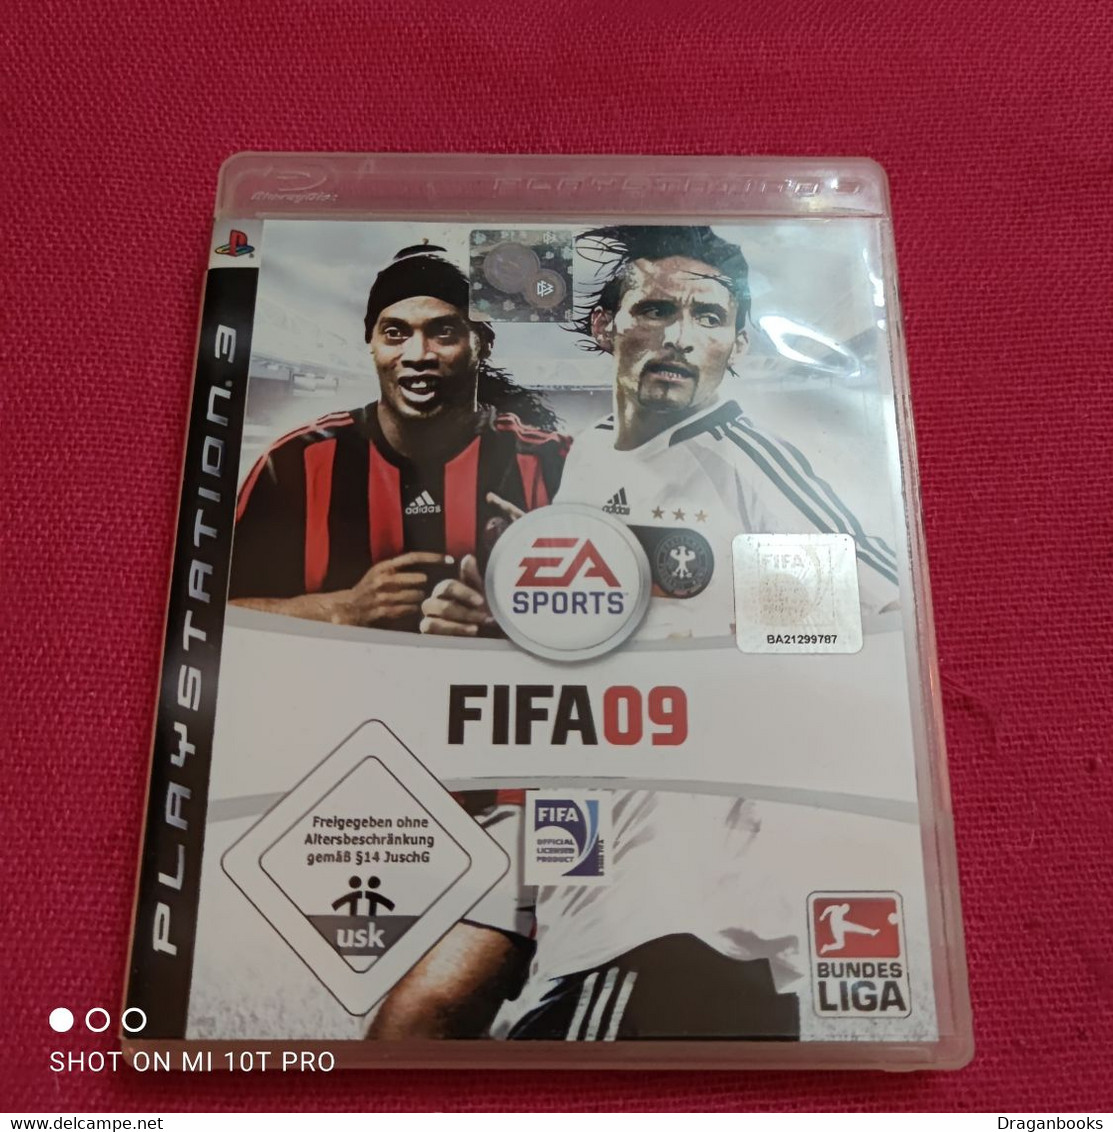 Fifa 09 - PS3 - PS3